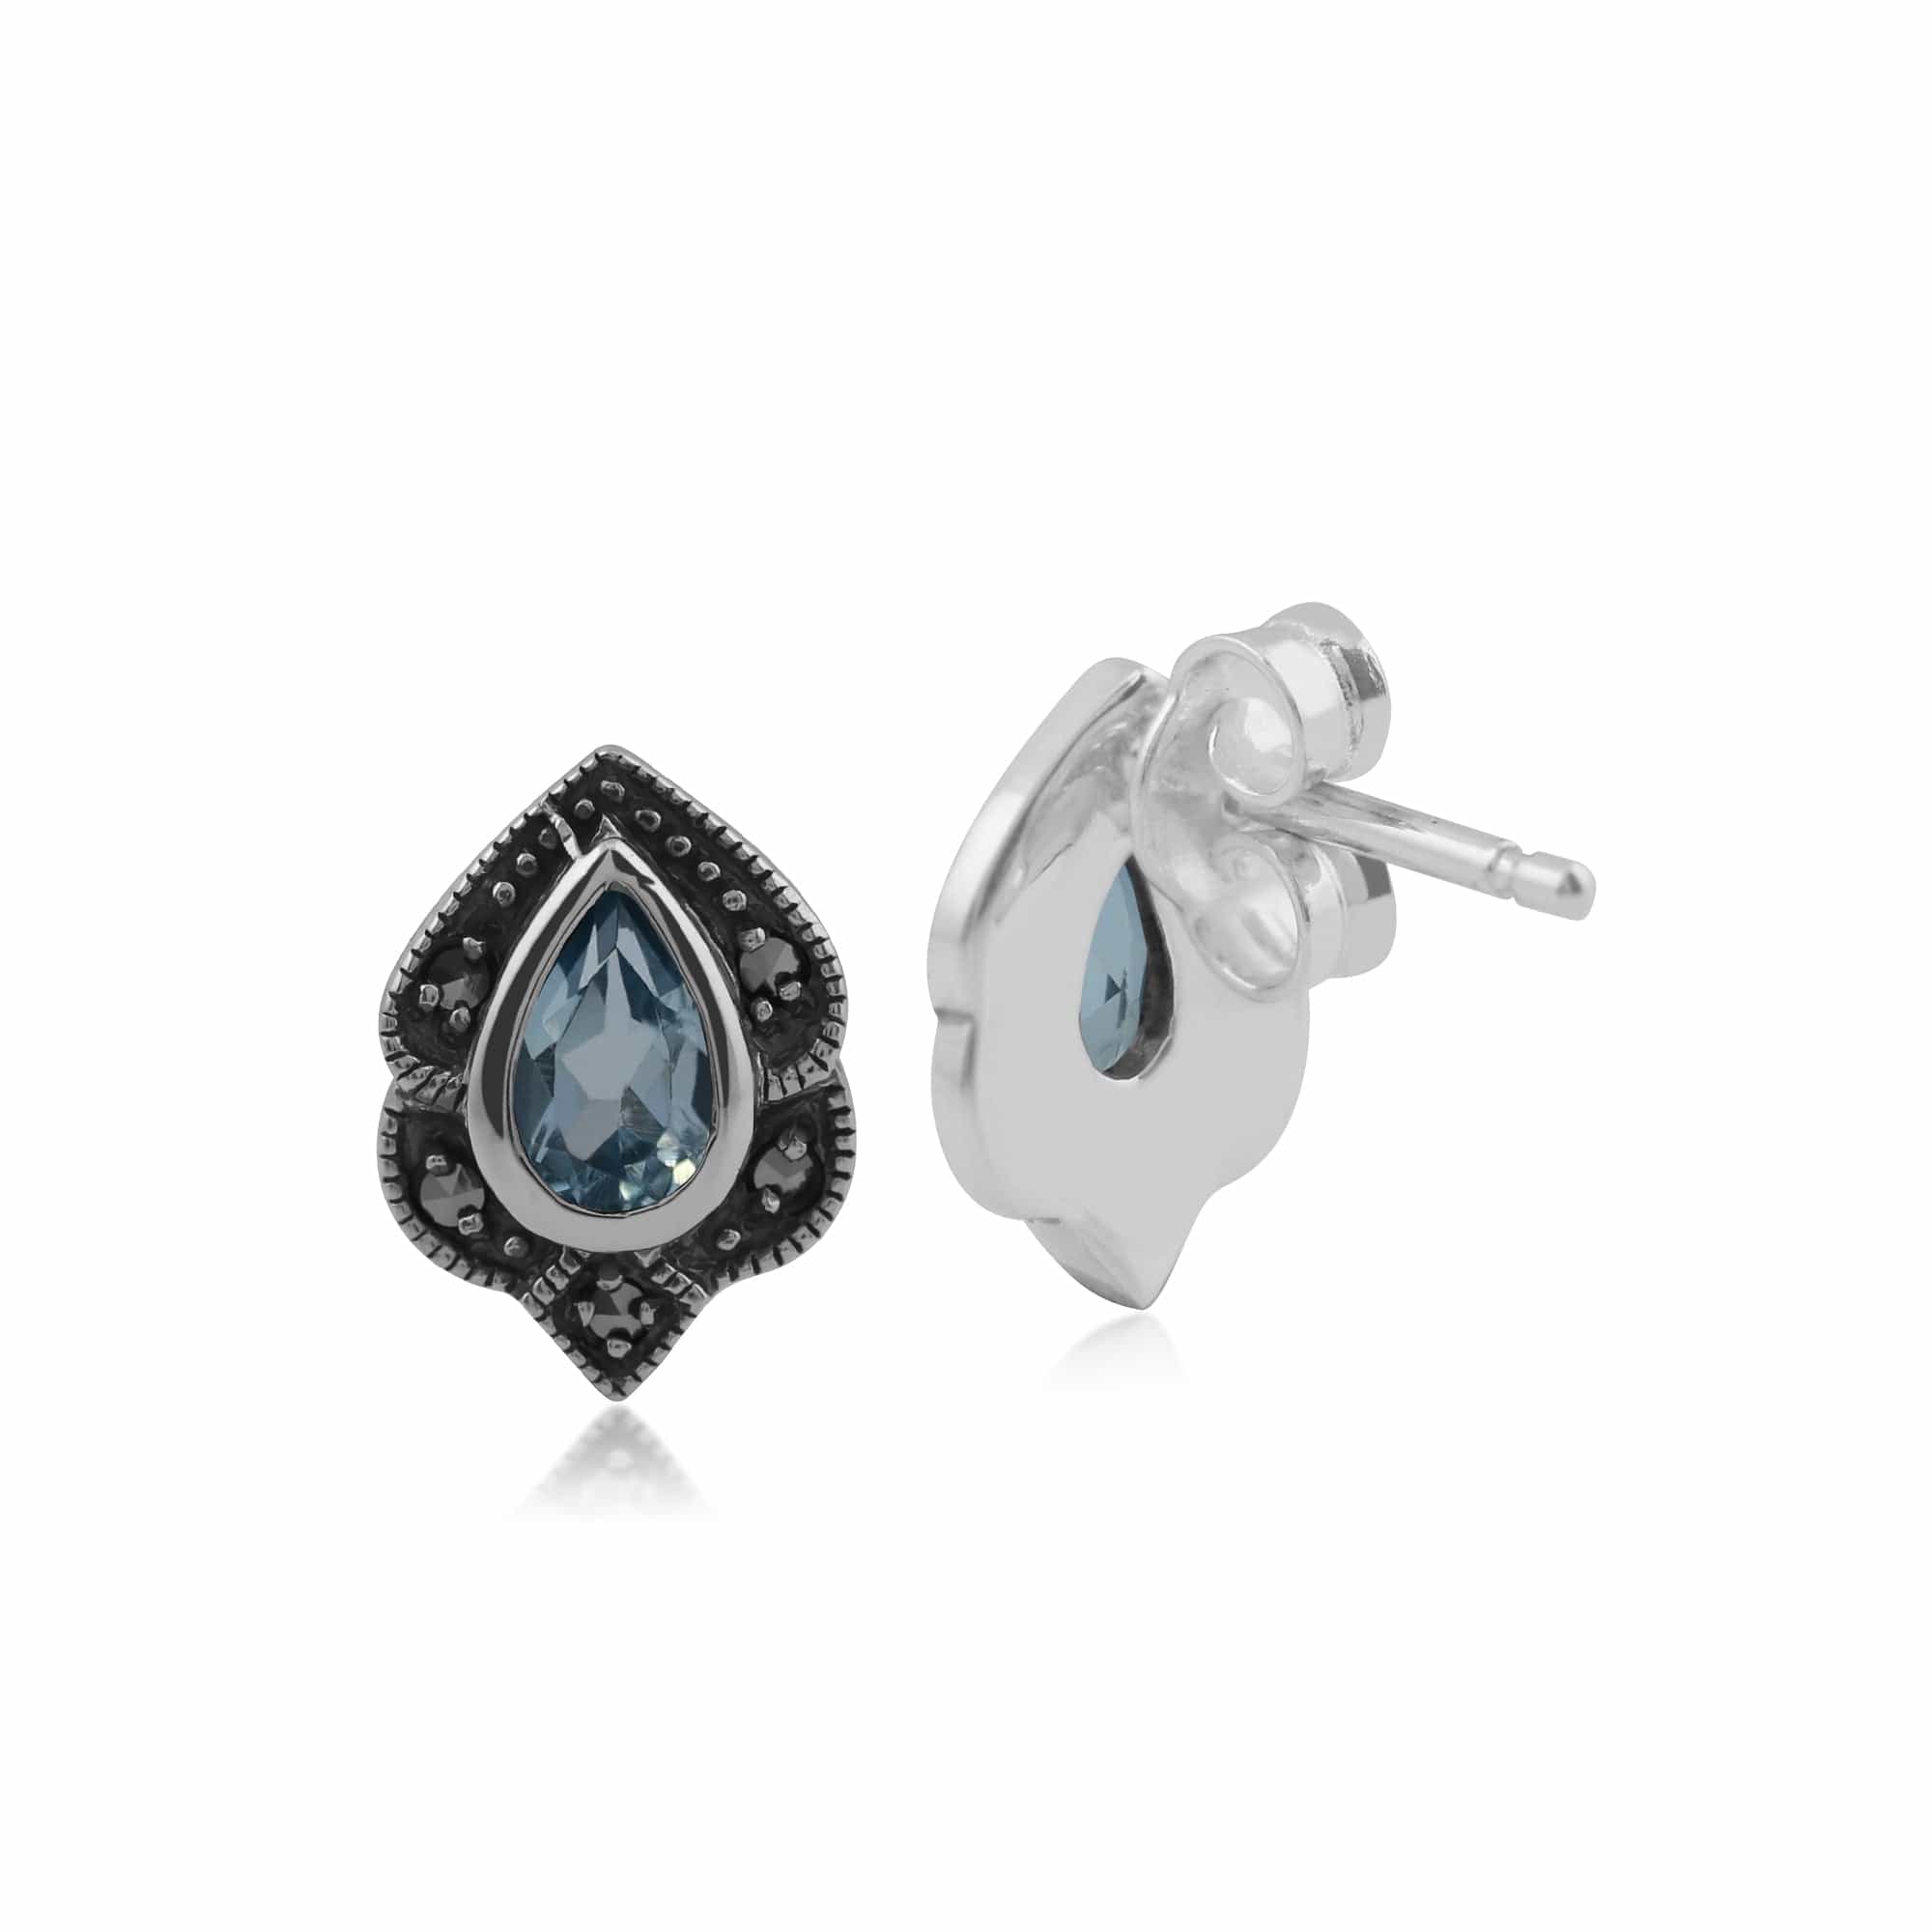 214E531604925 Art Nouveau Style Pear Blue Topaz & Marcasite Leaf Stud Earrings in 925 Sterling Silver 2